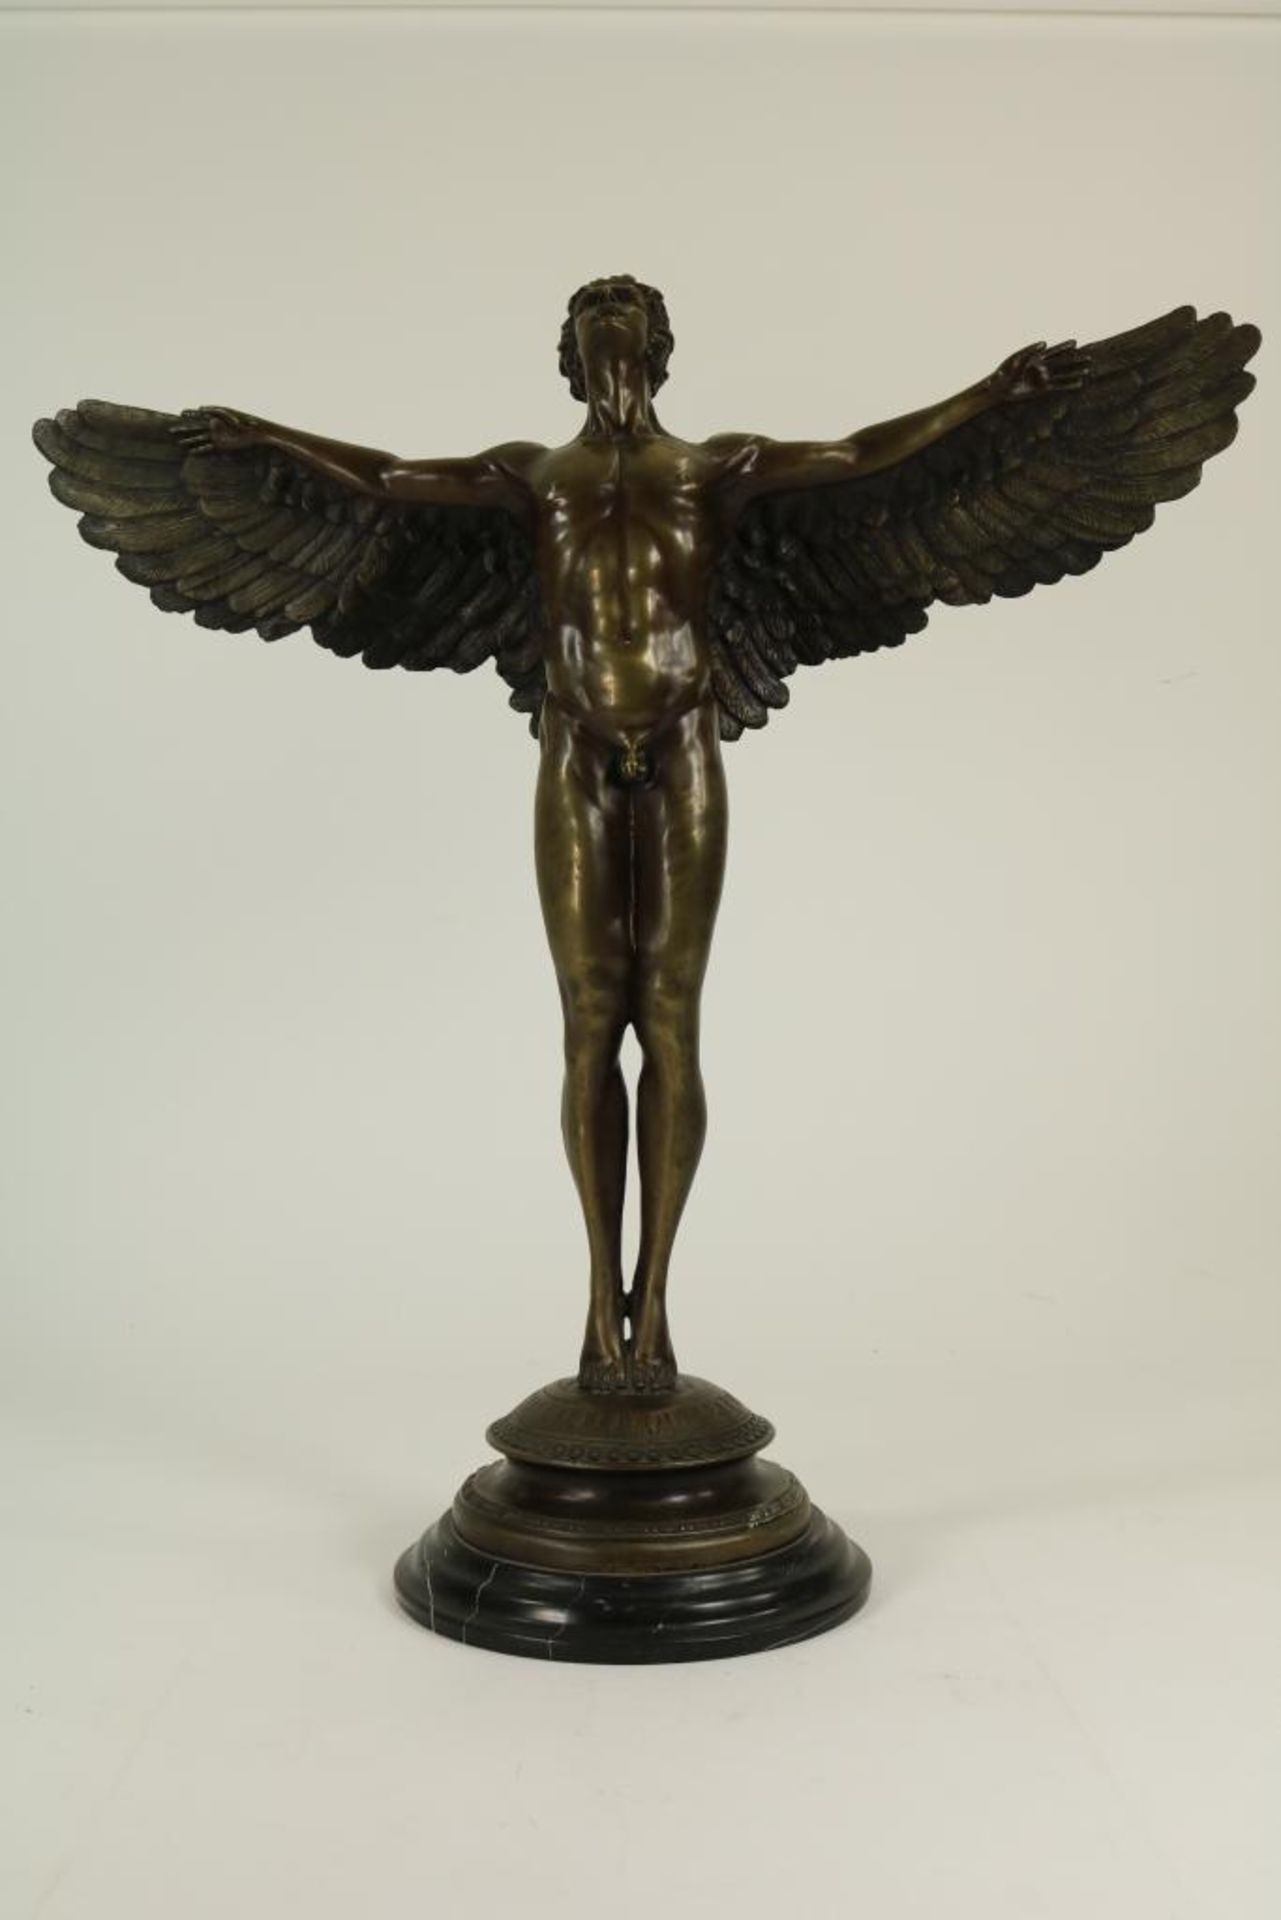 Bronzen sculptuur van Icarus